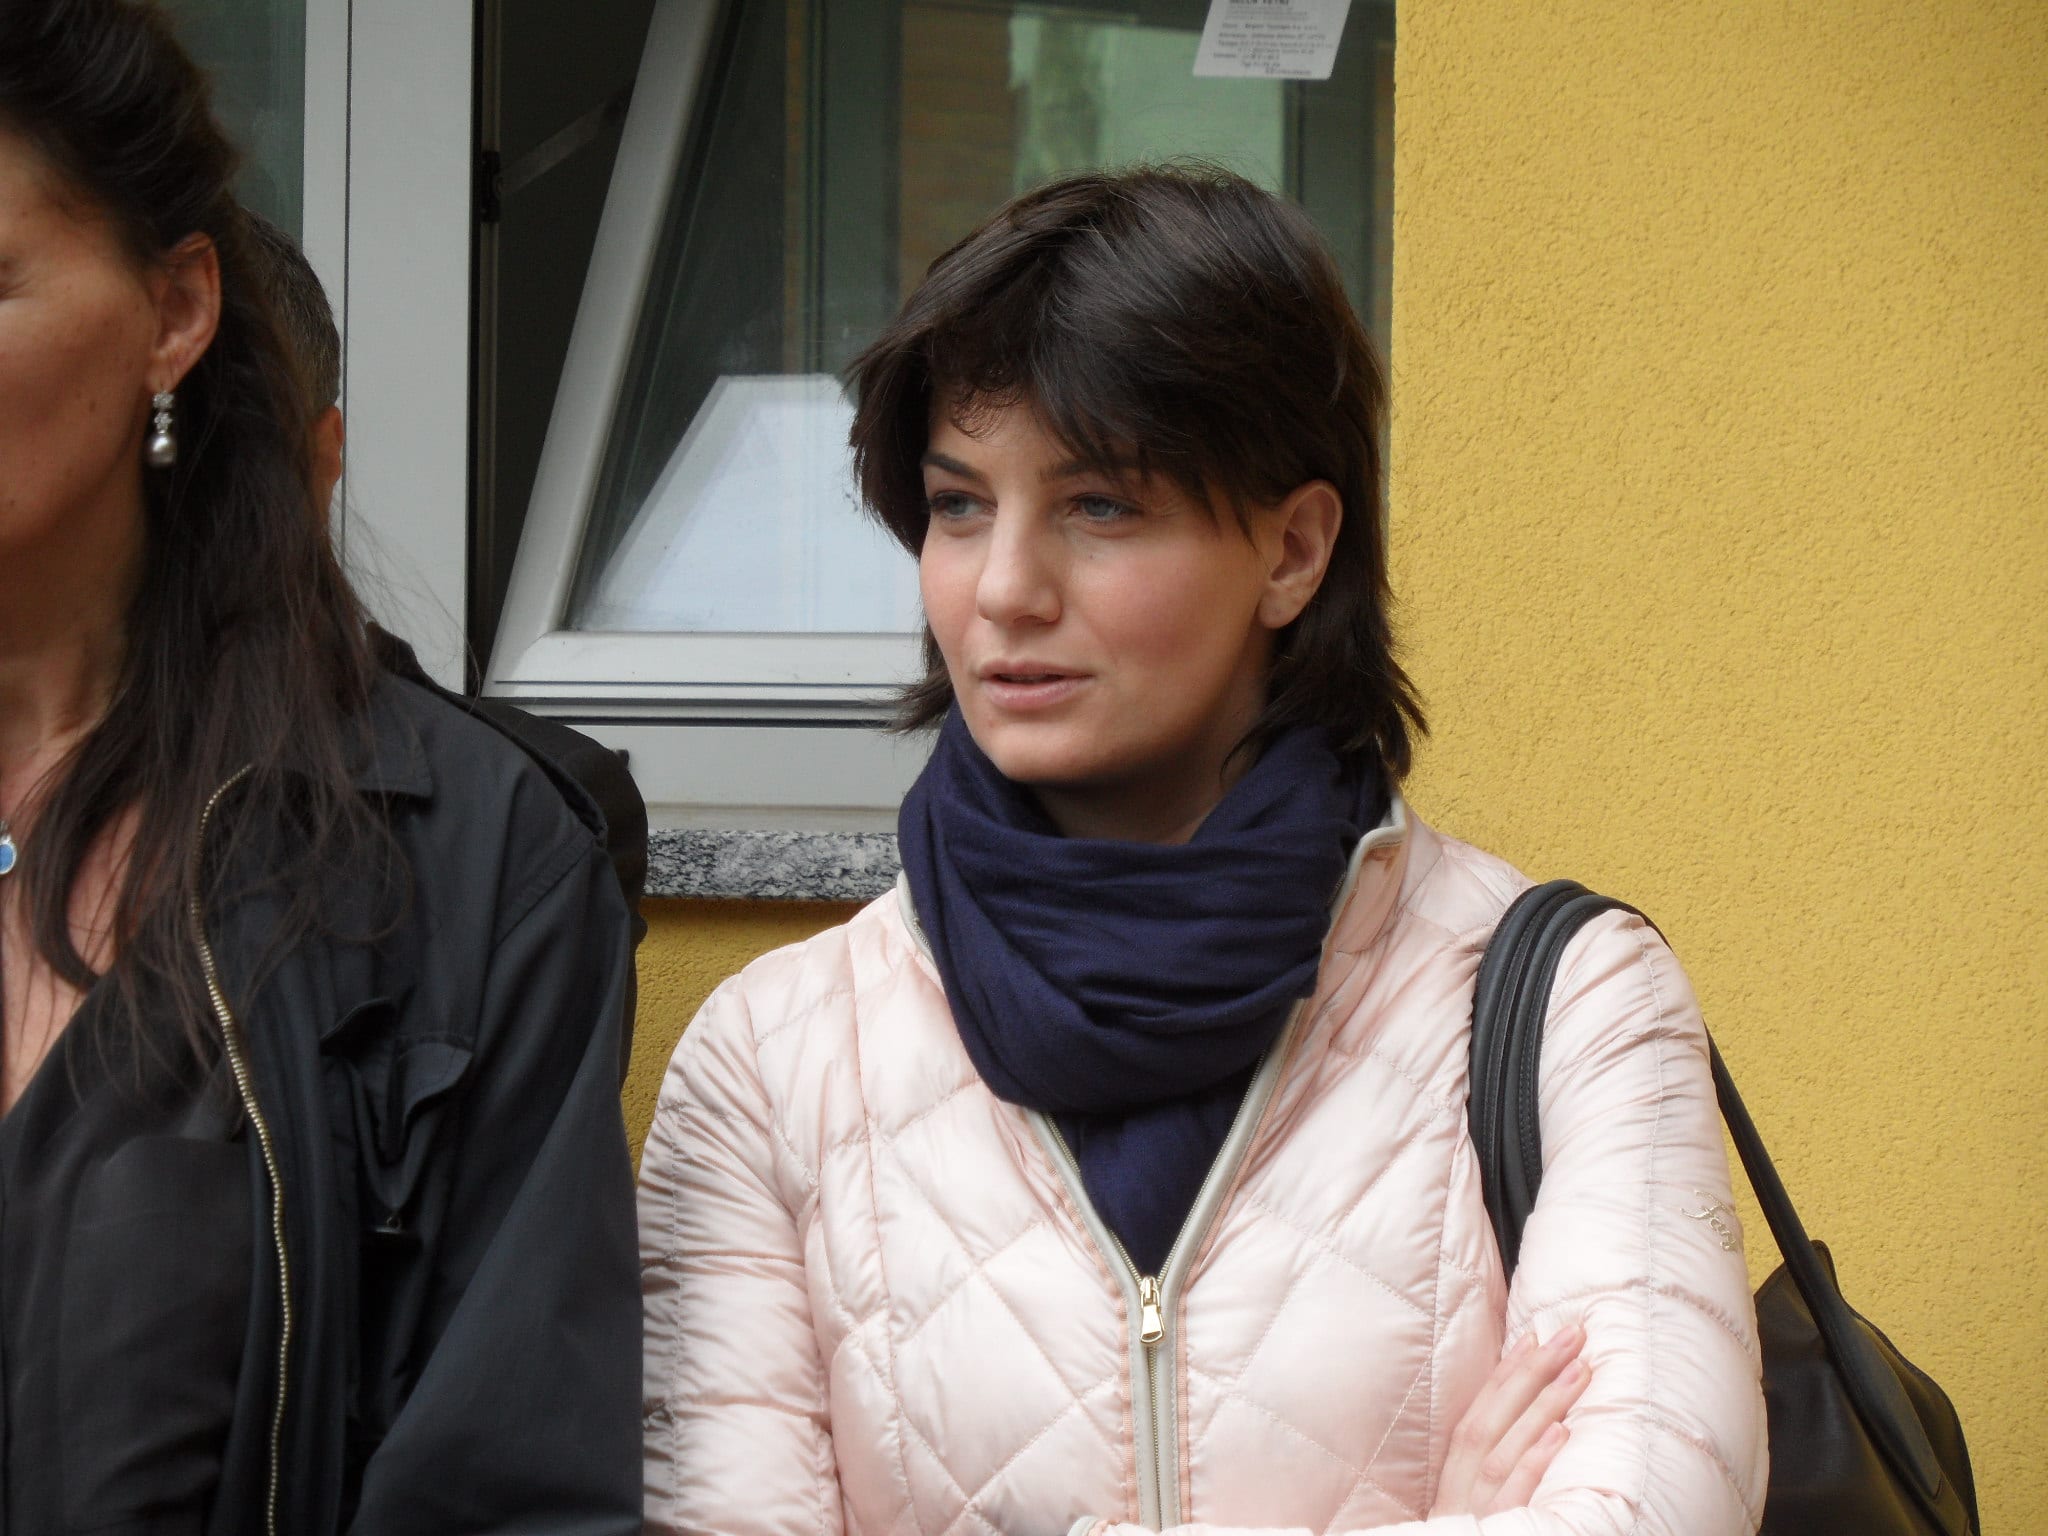 Ieri a Saronno: condannata Lara Comi. Scontri fra ultras Molinello-Dal Pozzo. Il futuro dell’ex Novartis